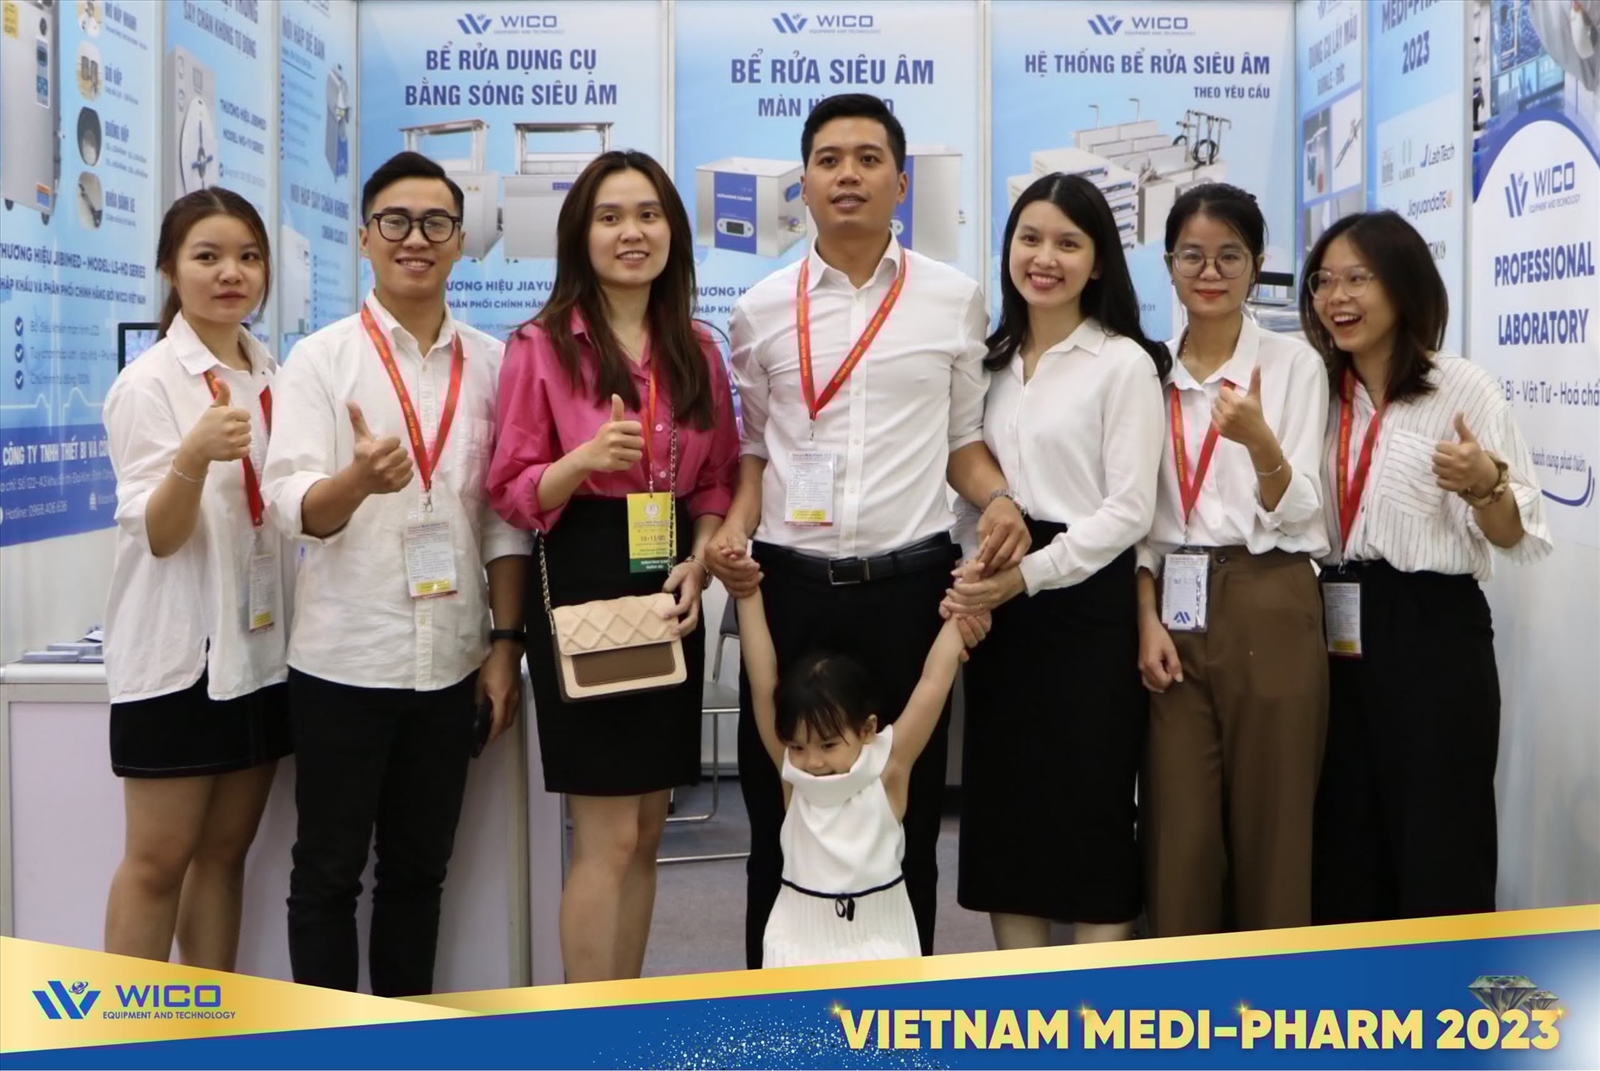 NHỮNG KHOẢNH KHẮC ĐÁNG NHỚ CỦA WICO TẠI VIETNAM-MEDIPHARM 2023